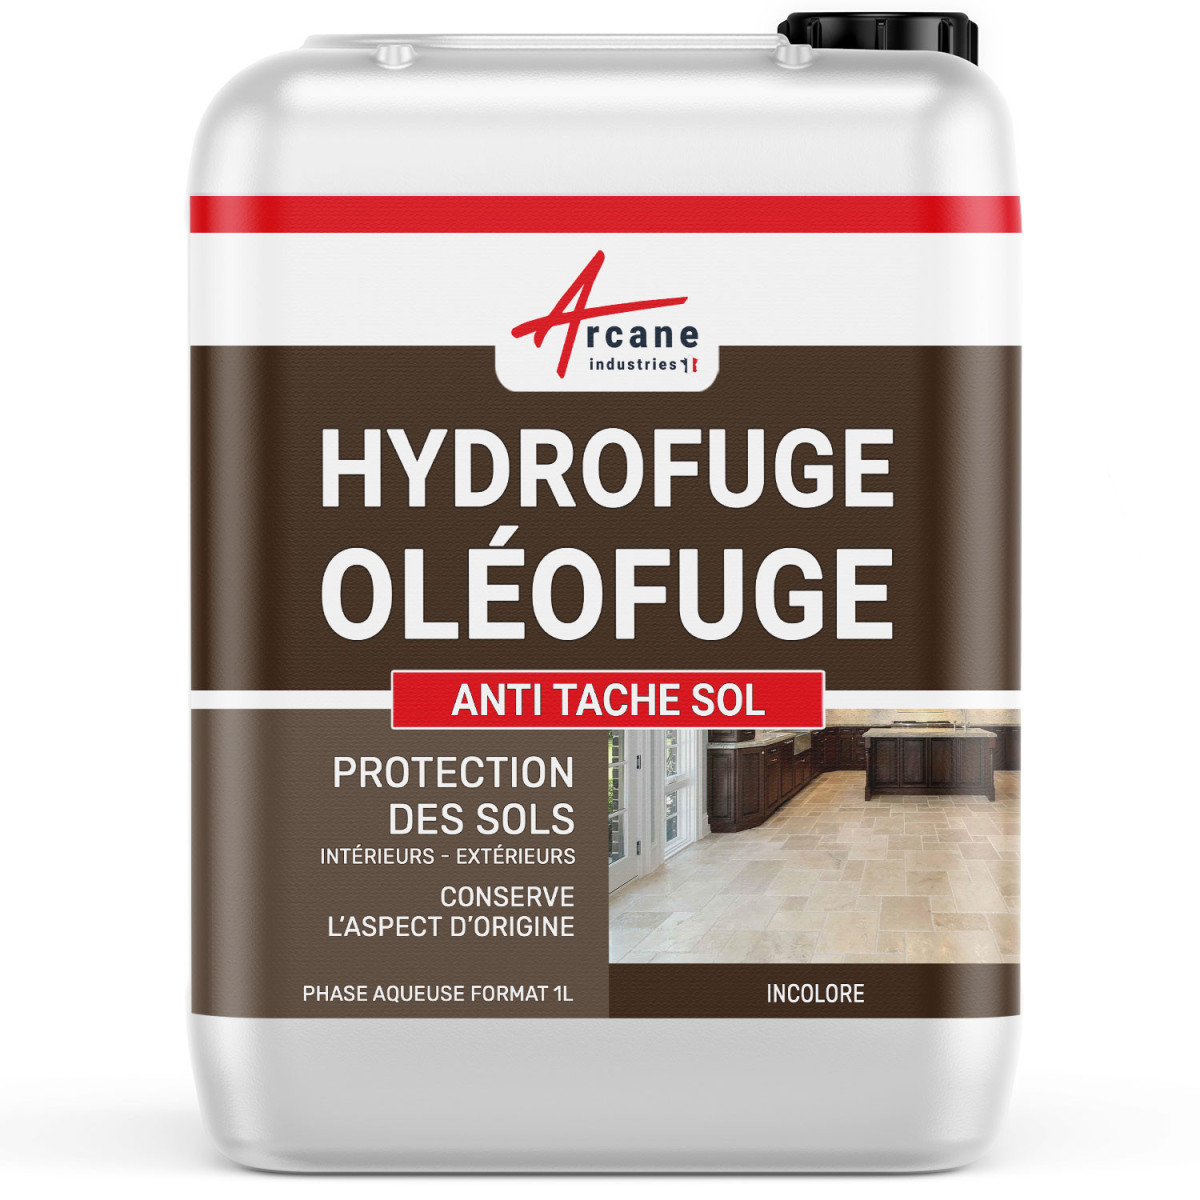 Hydrofuge oléofuge, imperméabilisant travertin et sols poreux : ANTI TACHES SOL